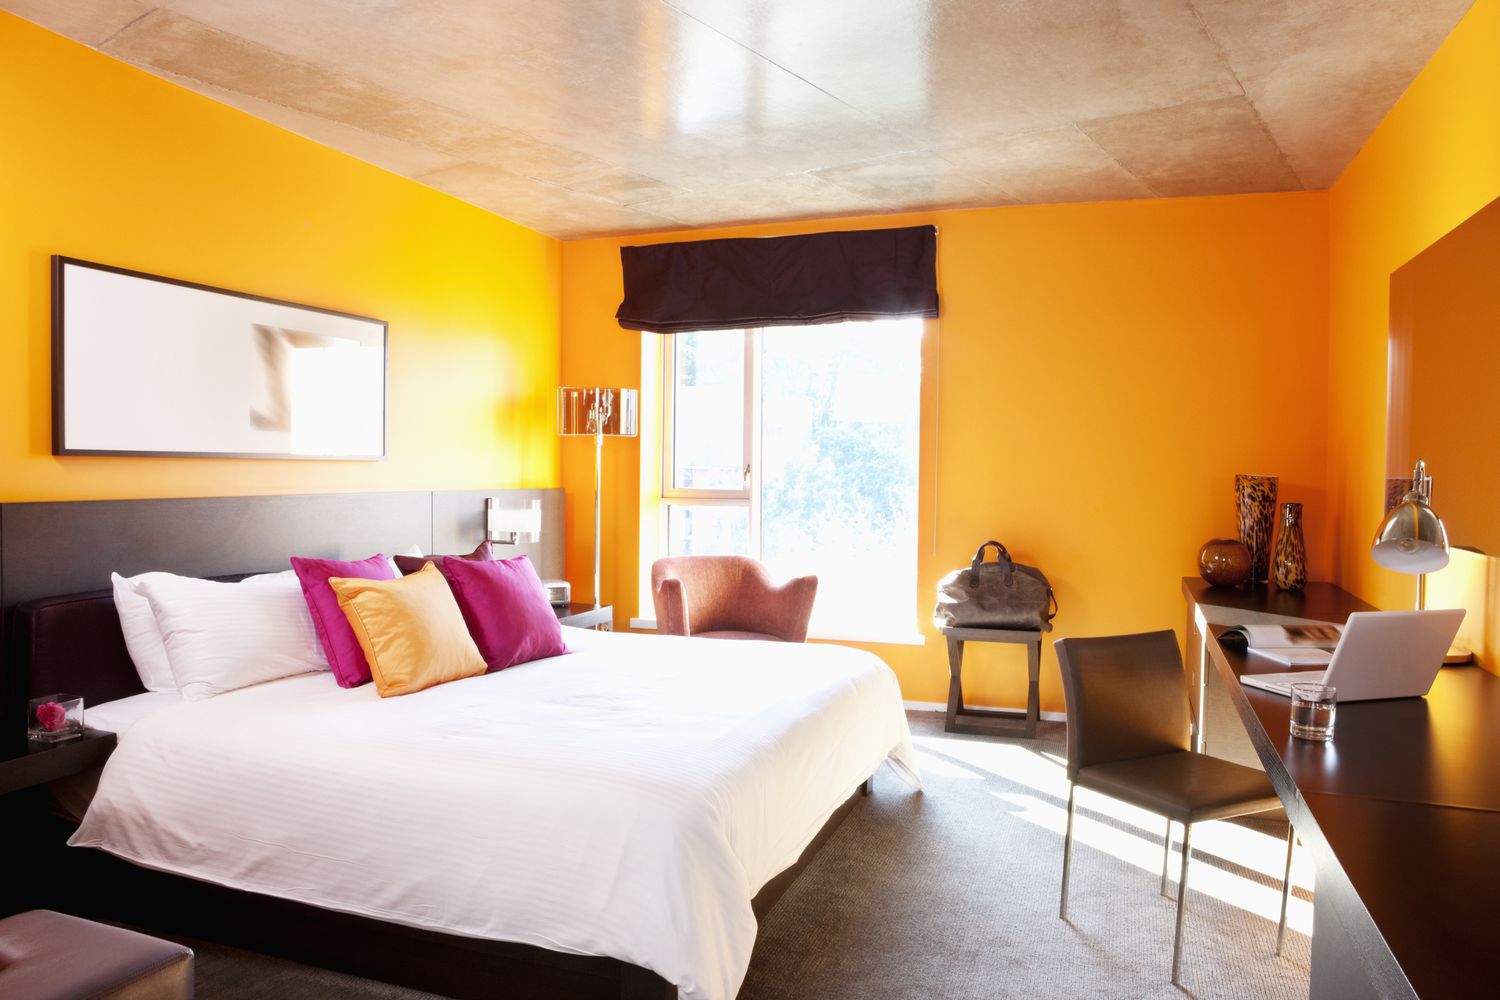 Schlafzimmer mit orangefarbenen Wänden und Akzentkissen